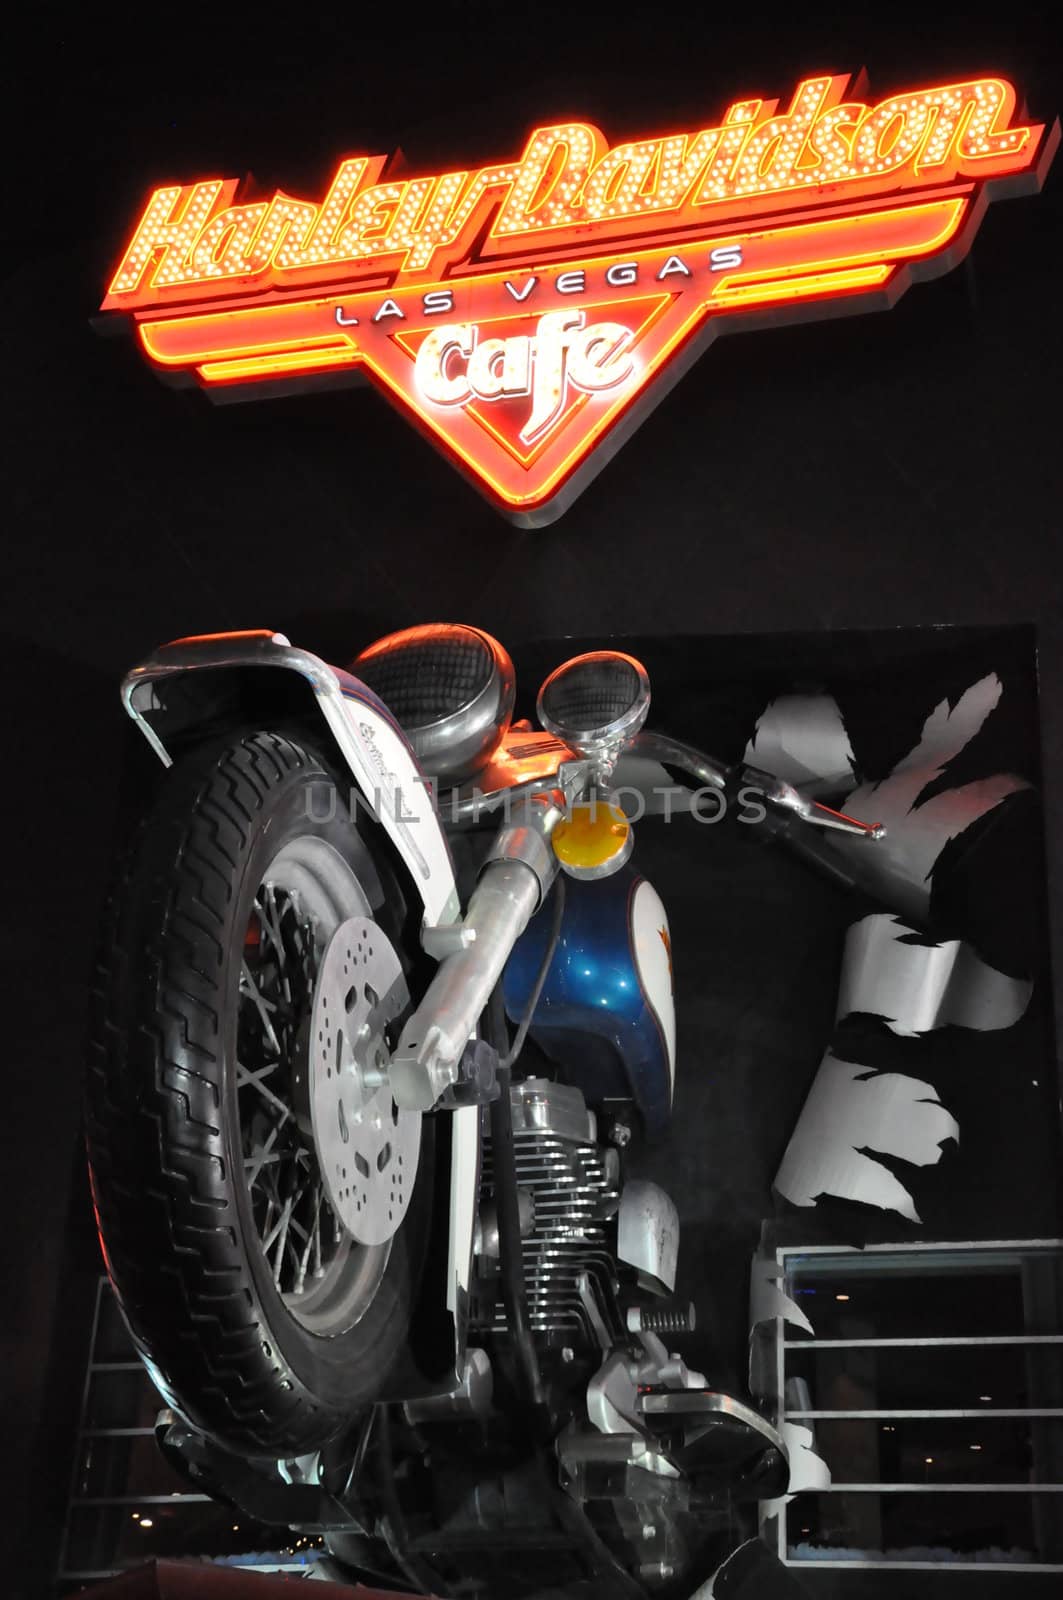 Harley Davidson Cafe in Las Vegas, Nevada